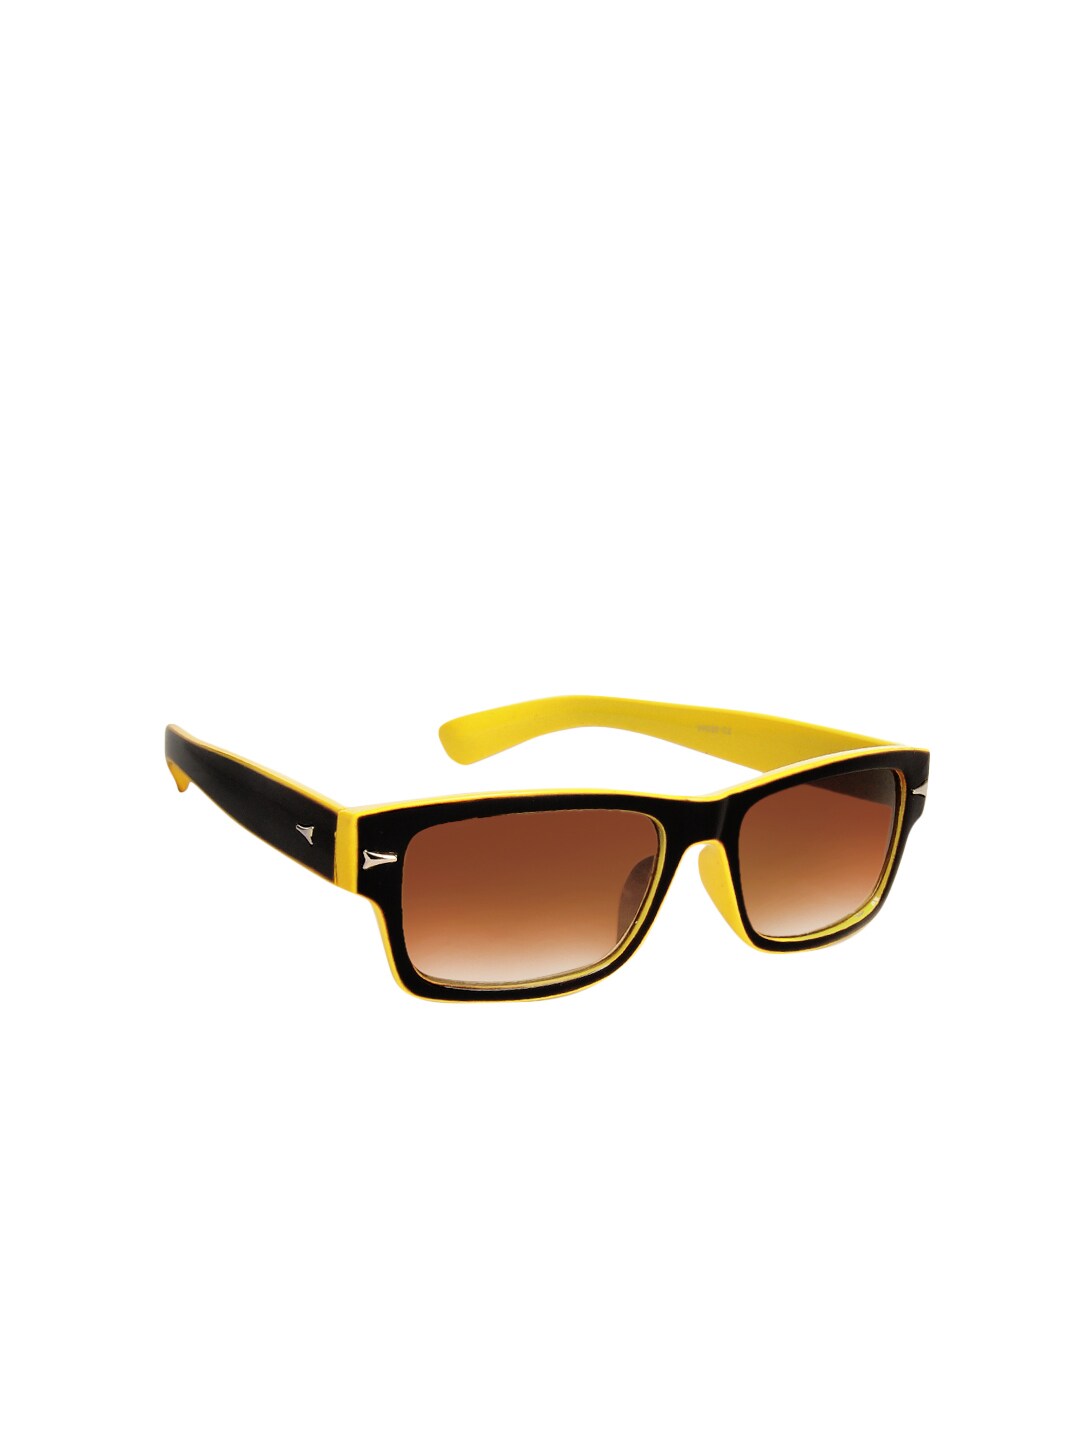 Van Heusen Unisex Wayfarer Sunglasses VH220-C2